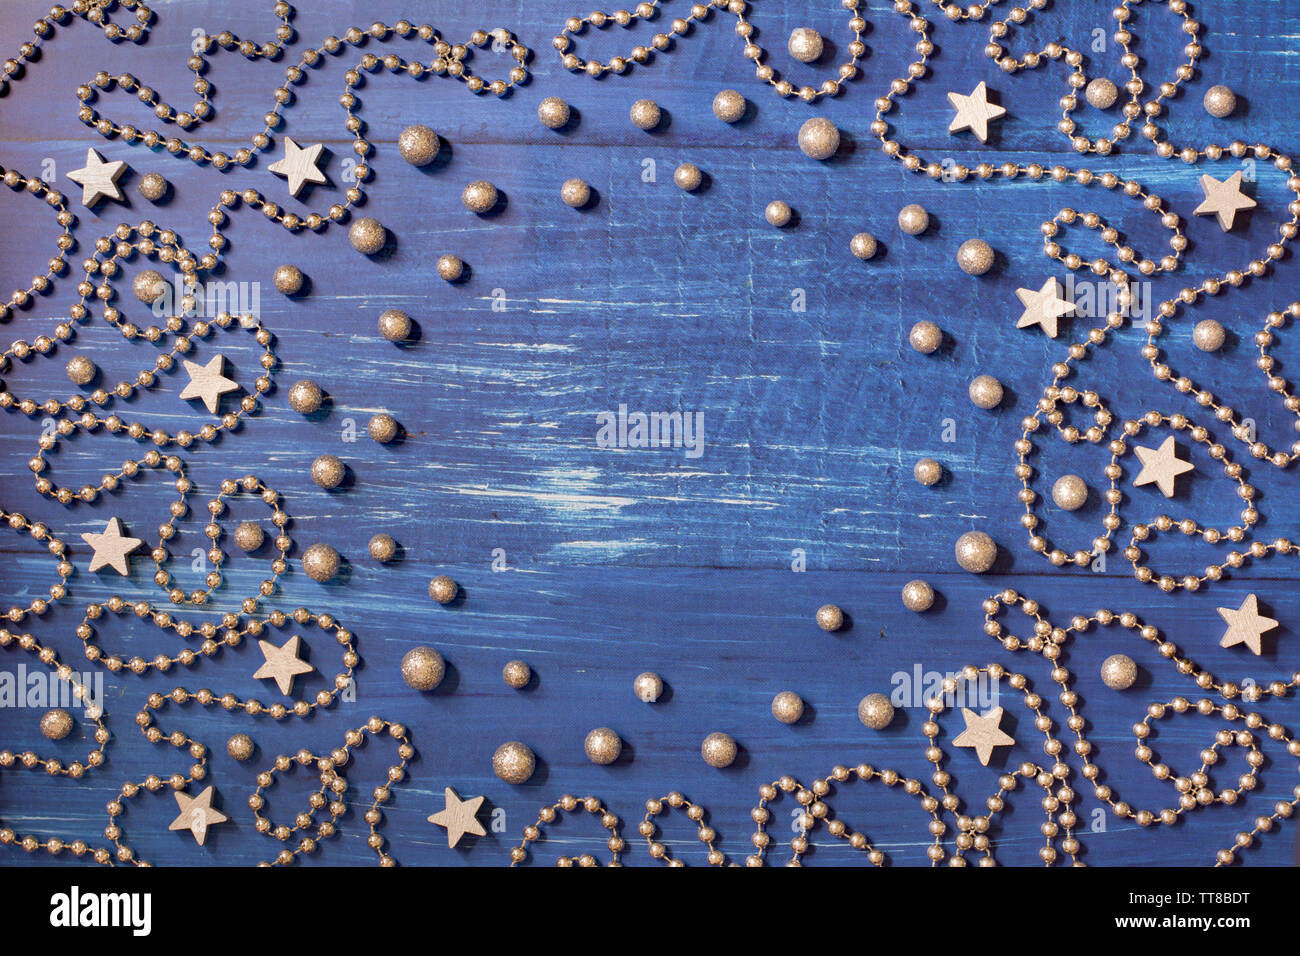 Weihnachtsdekoration mit silbernen Perlen Kette und Sterne auf dunkelblauem Hintergrund Holz - Platz für Text in der Mitte Stockfoto